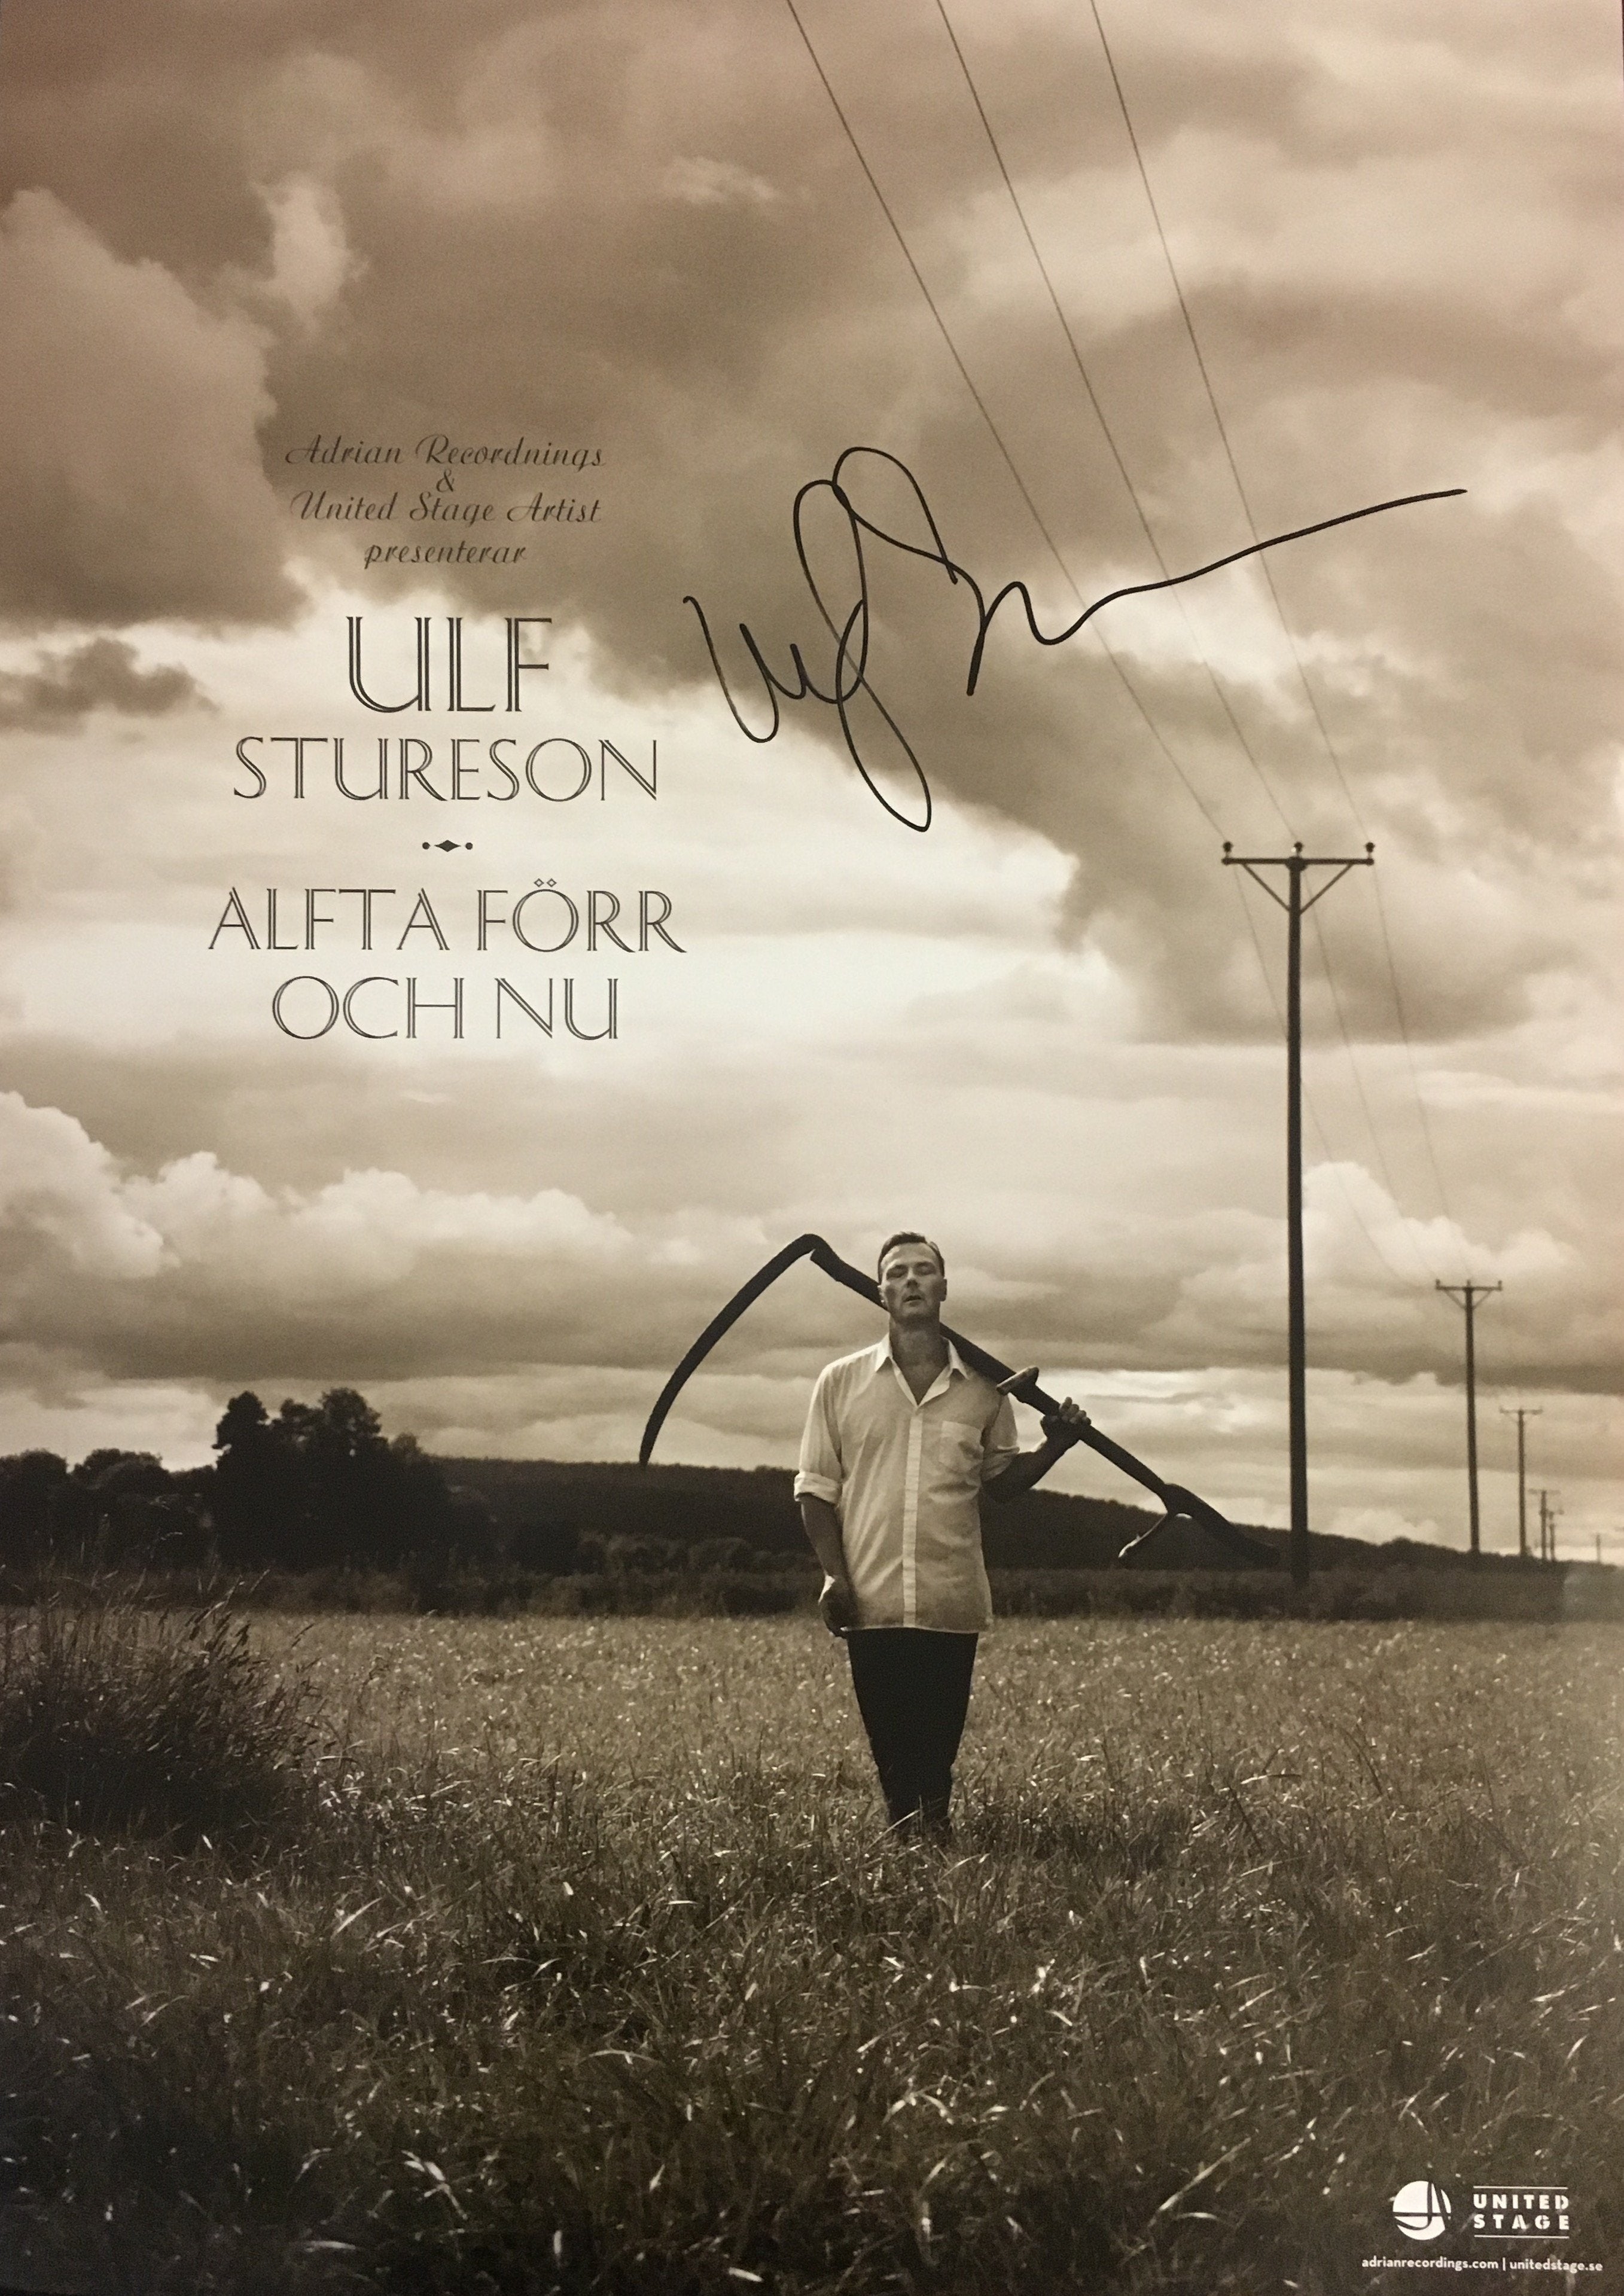 Ulf Stureson - Alfta förr och nu (Poster - Signerad)